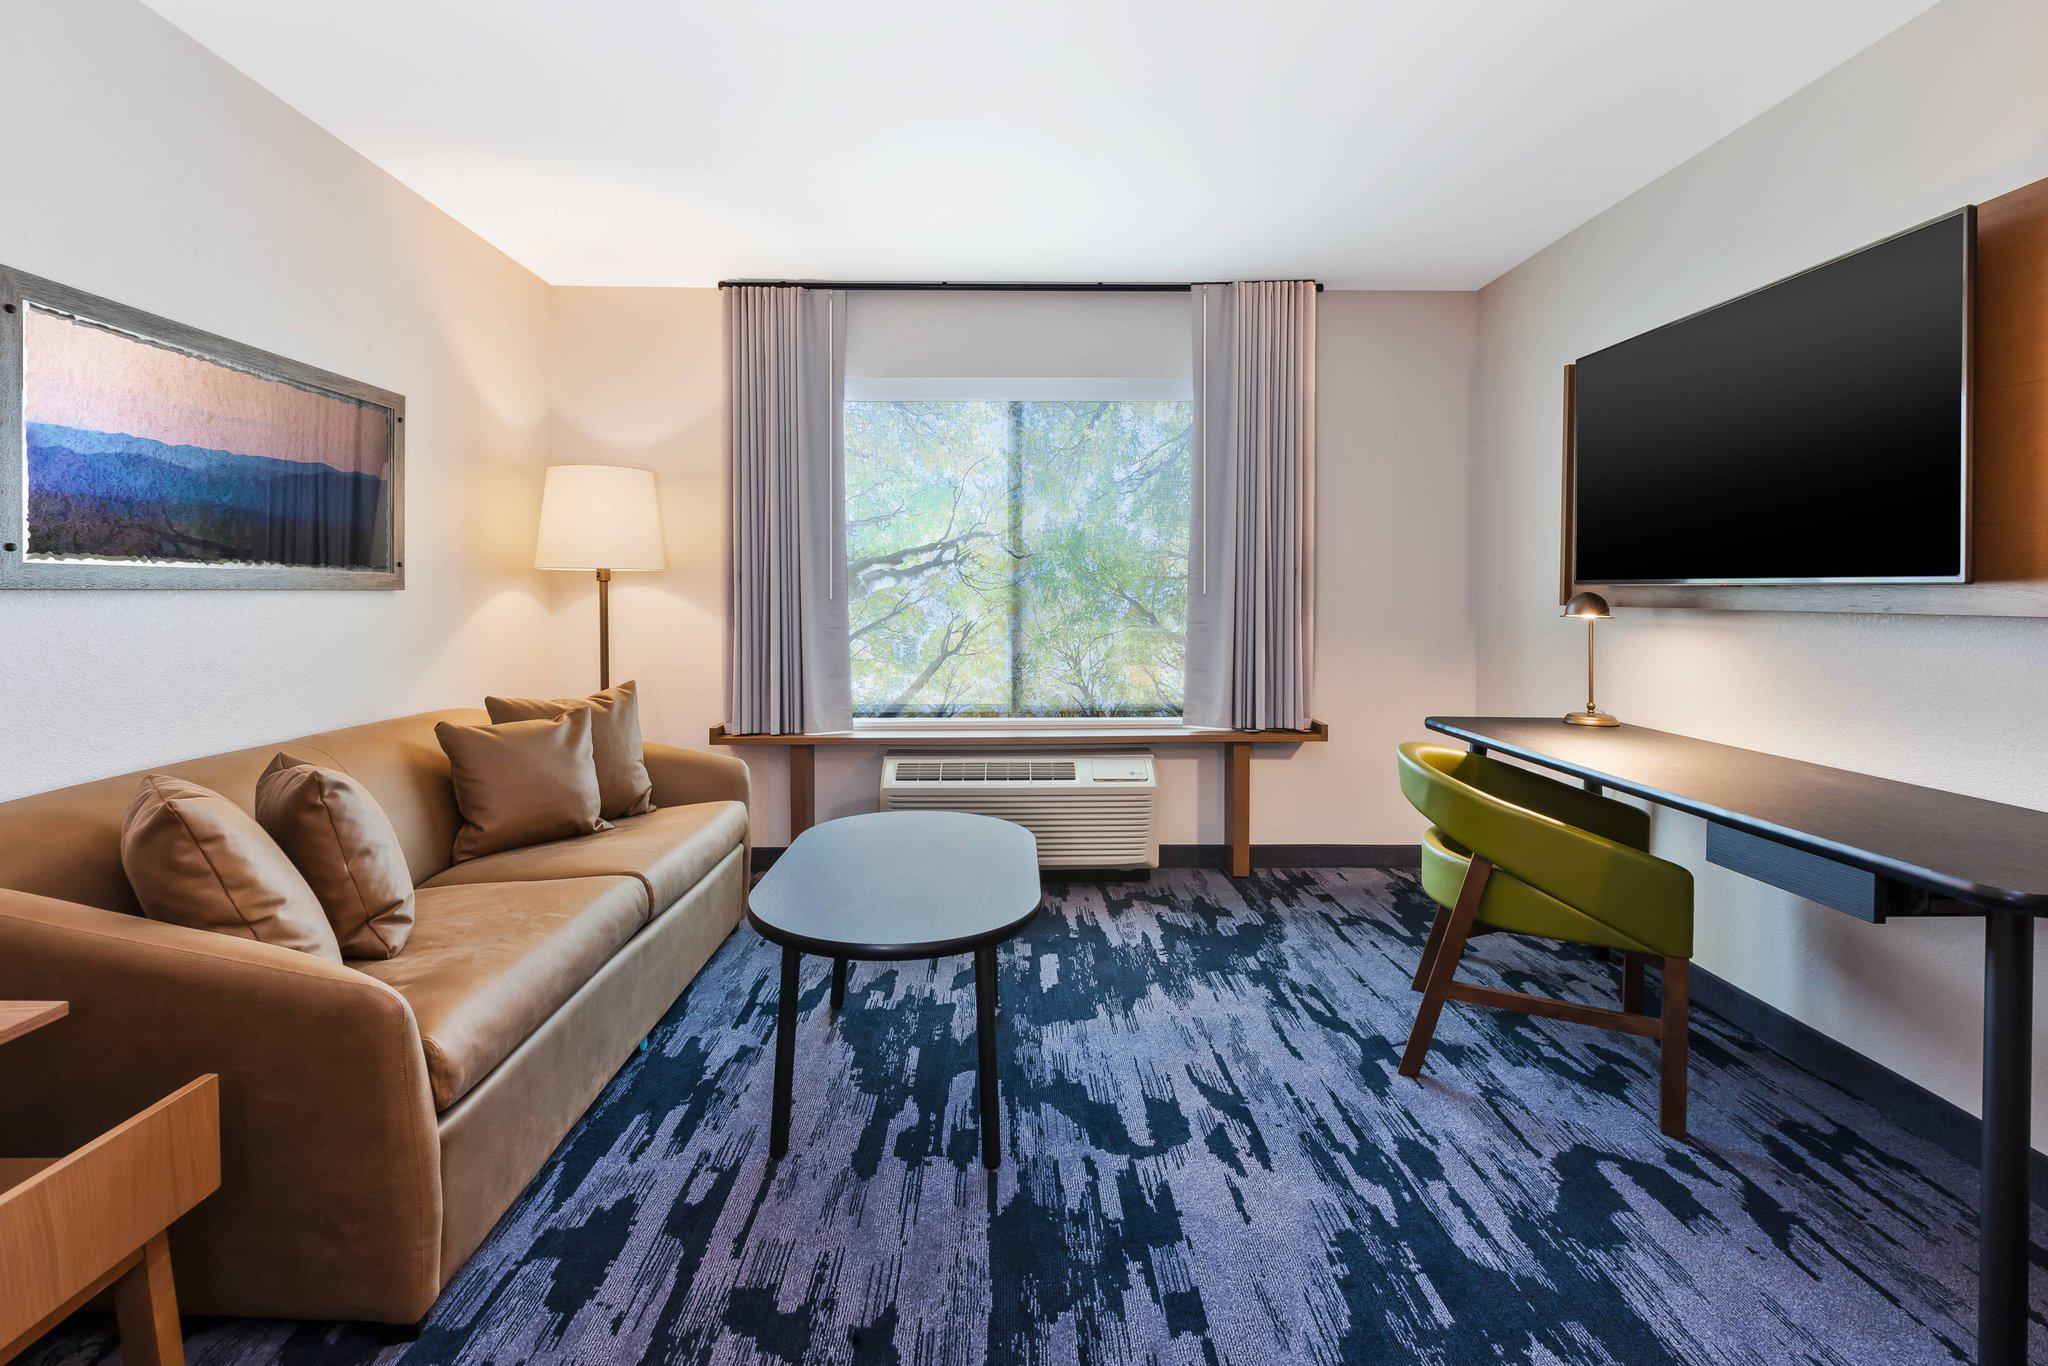 Fairfield Inn & Suites by Marriott Goshen Photo